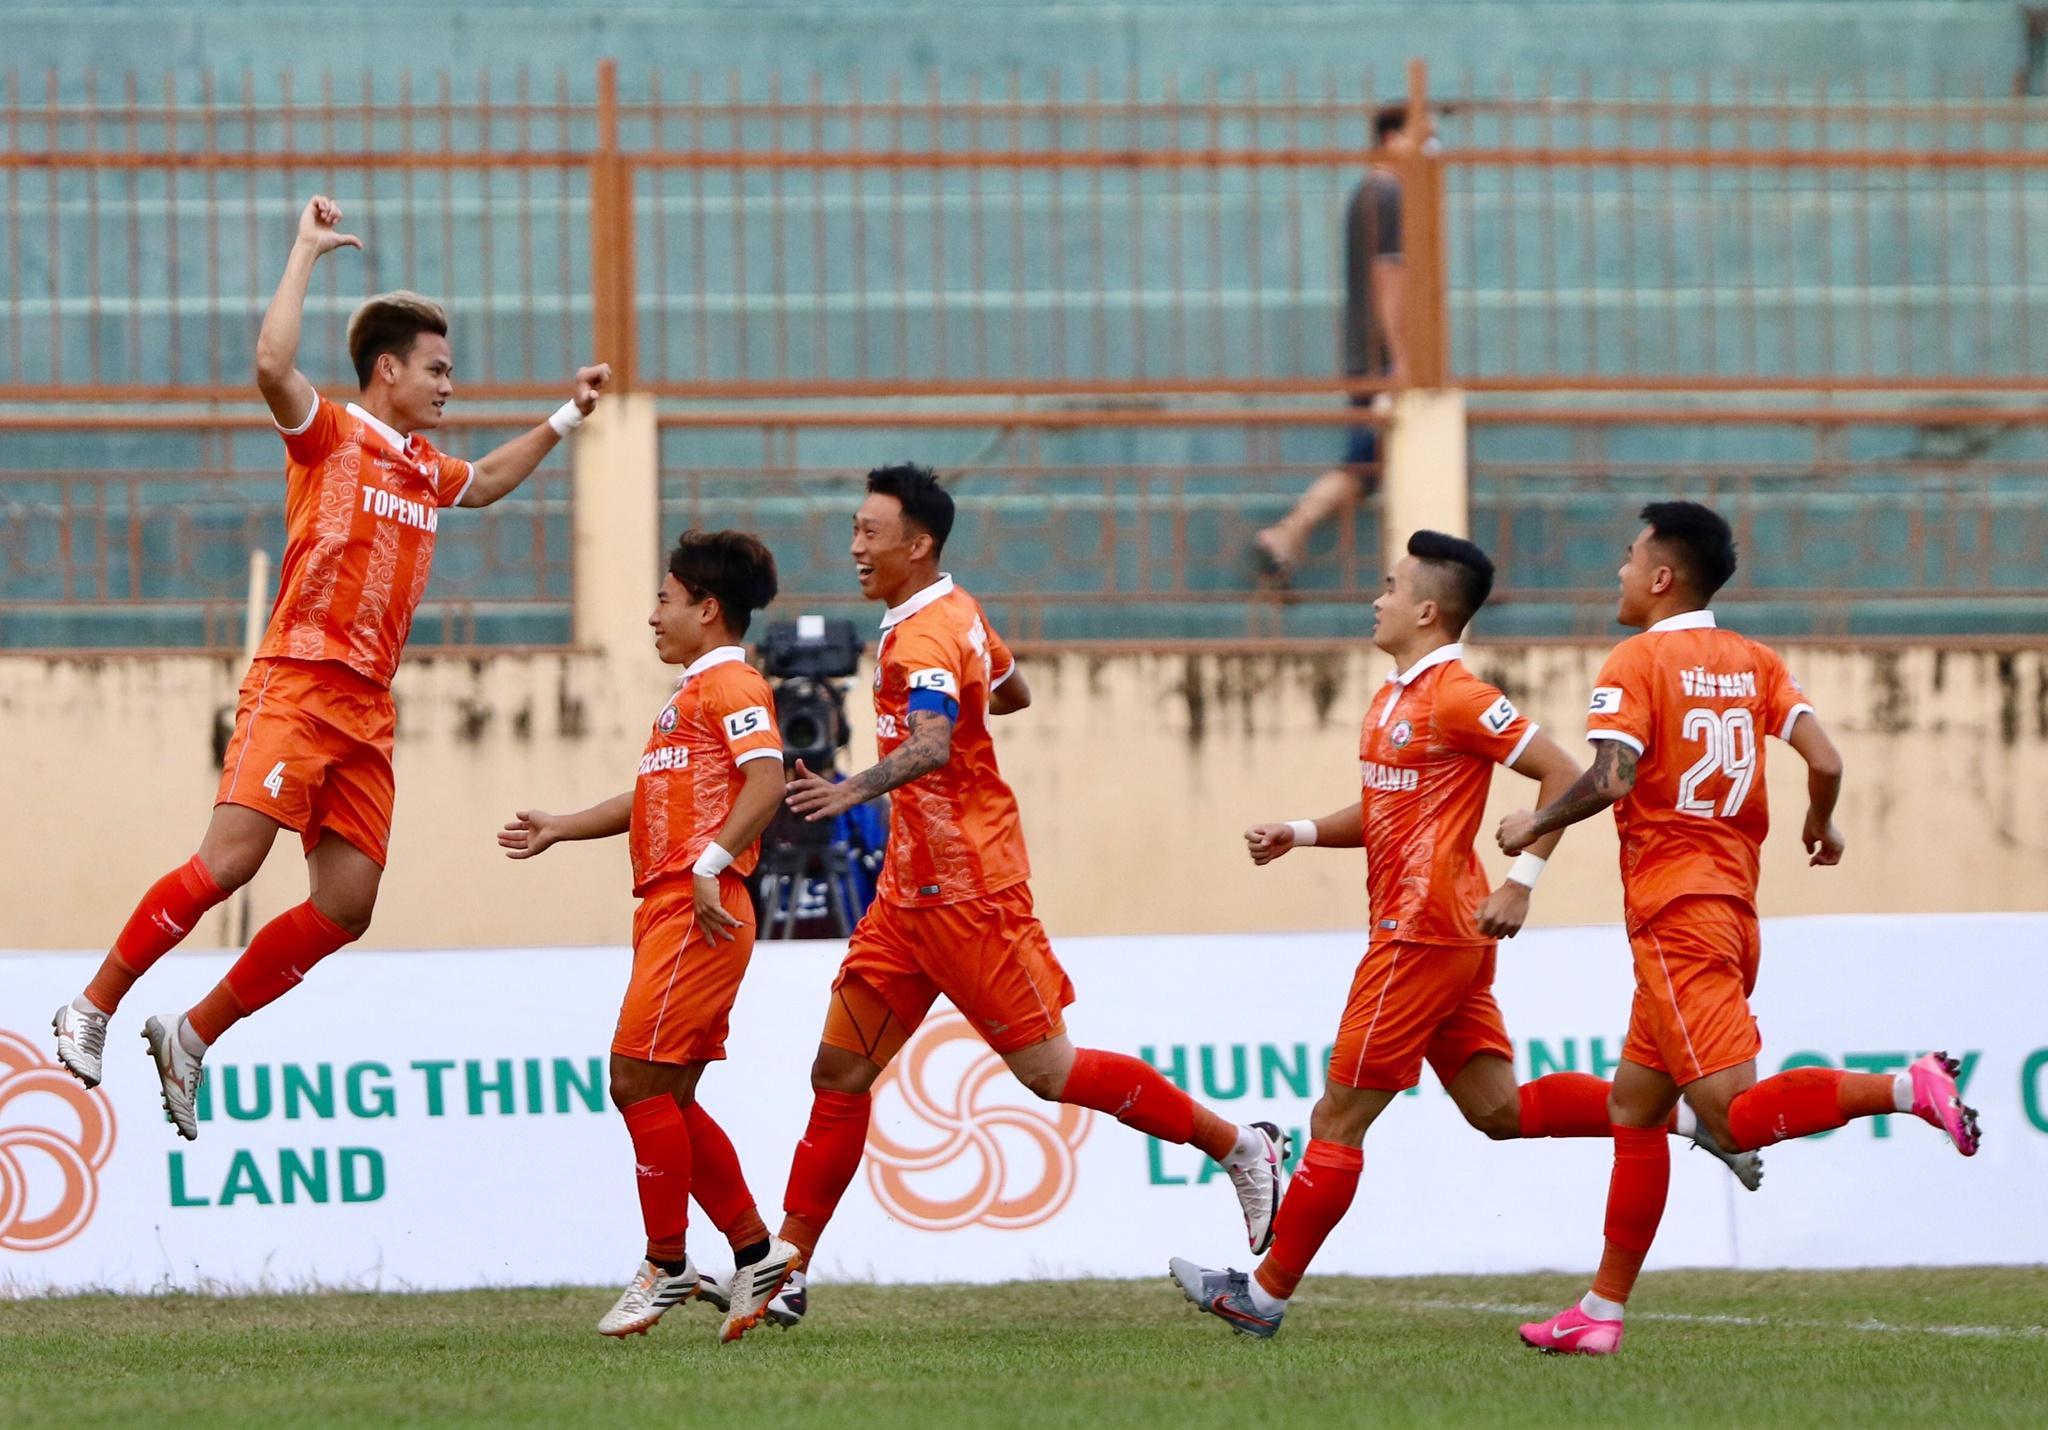 Kết quả V-League 2021, Bình Định 1-0 Sài Gòn FC: Hồ Tấn Tài khiến 'hung thần' Đỗ Merlo nín lặng! - ảnh 1